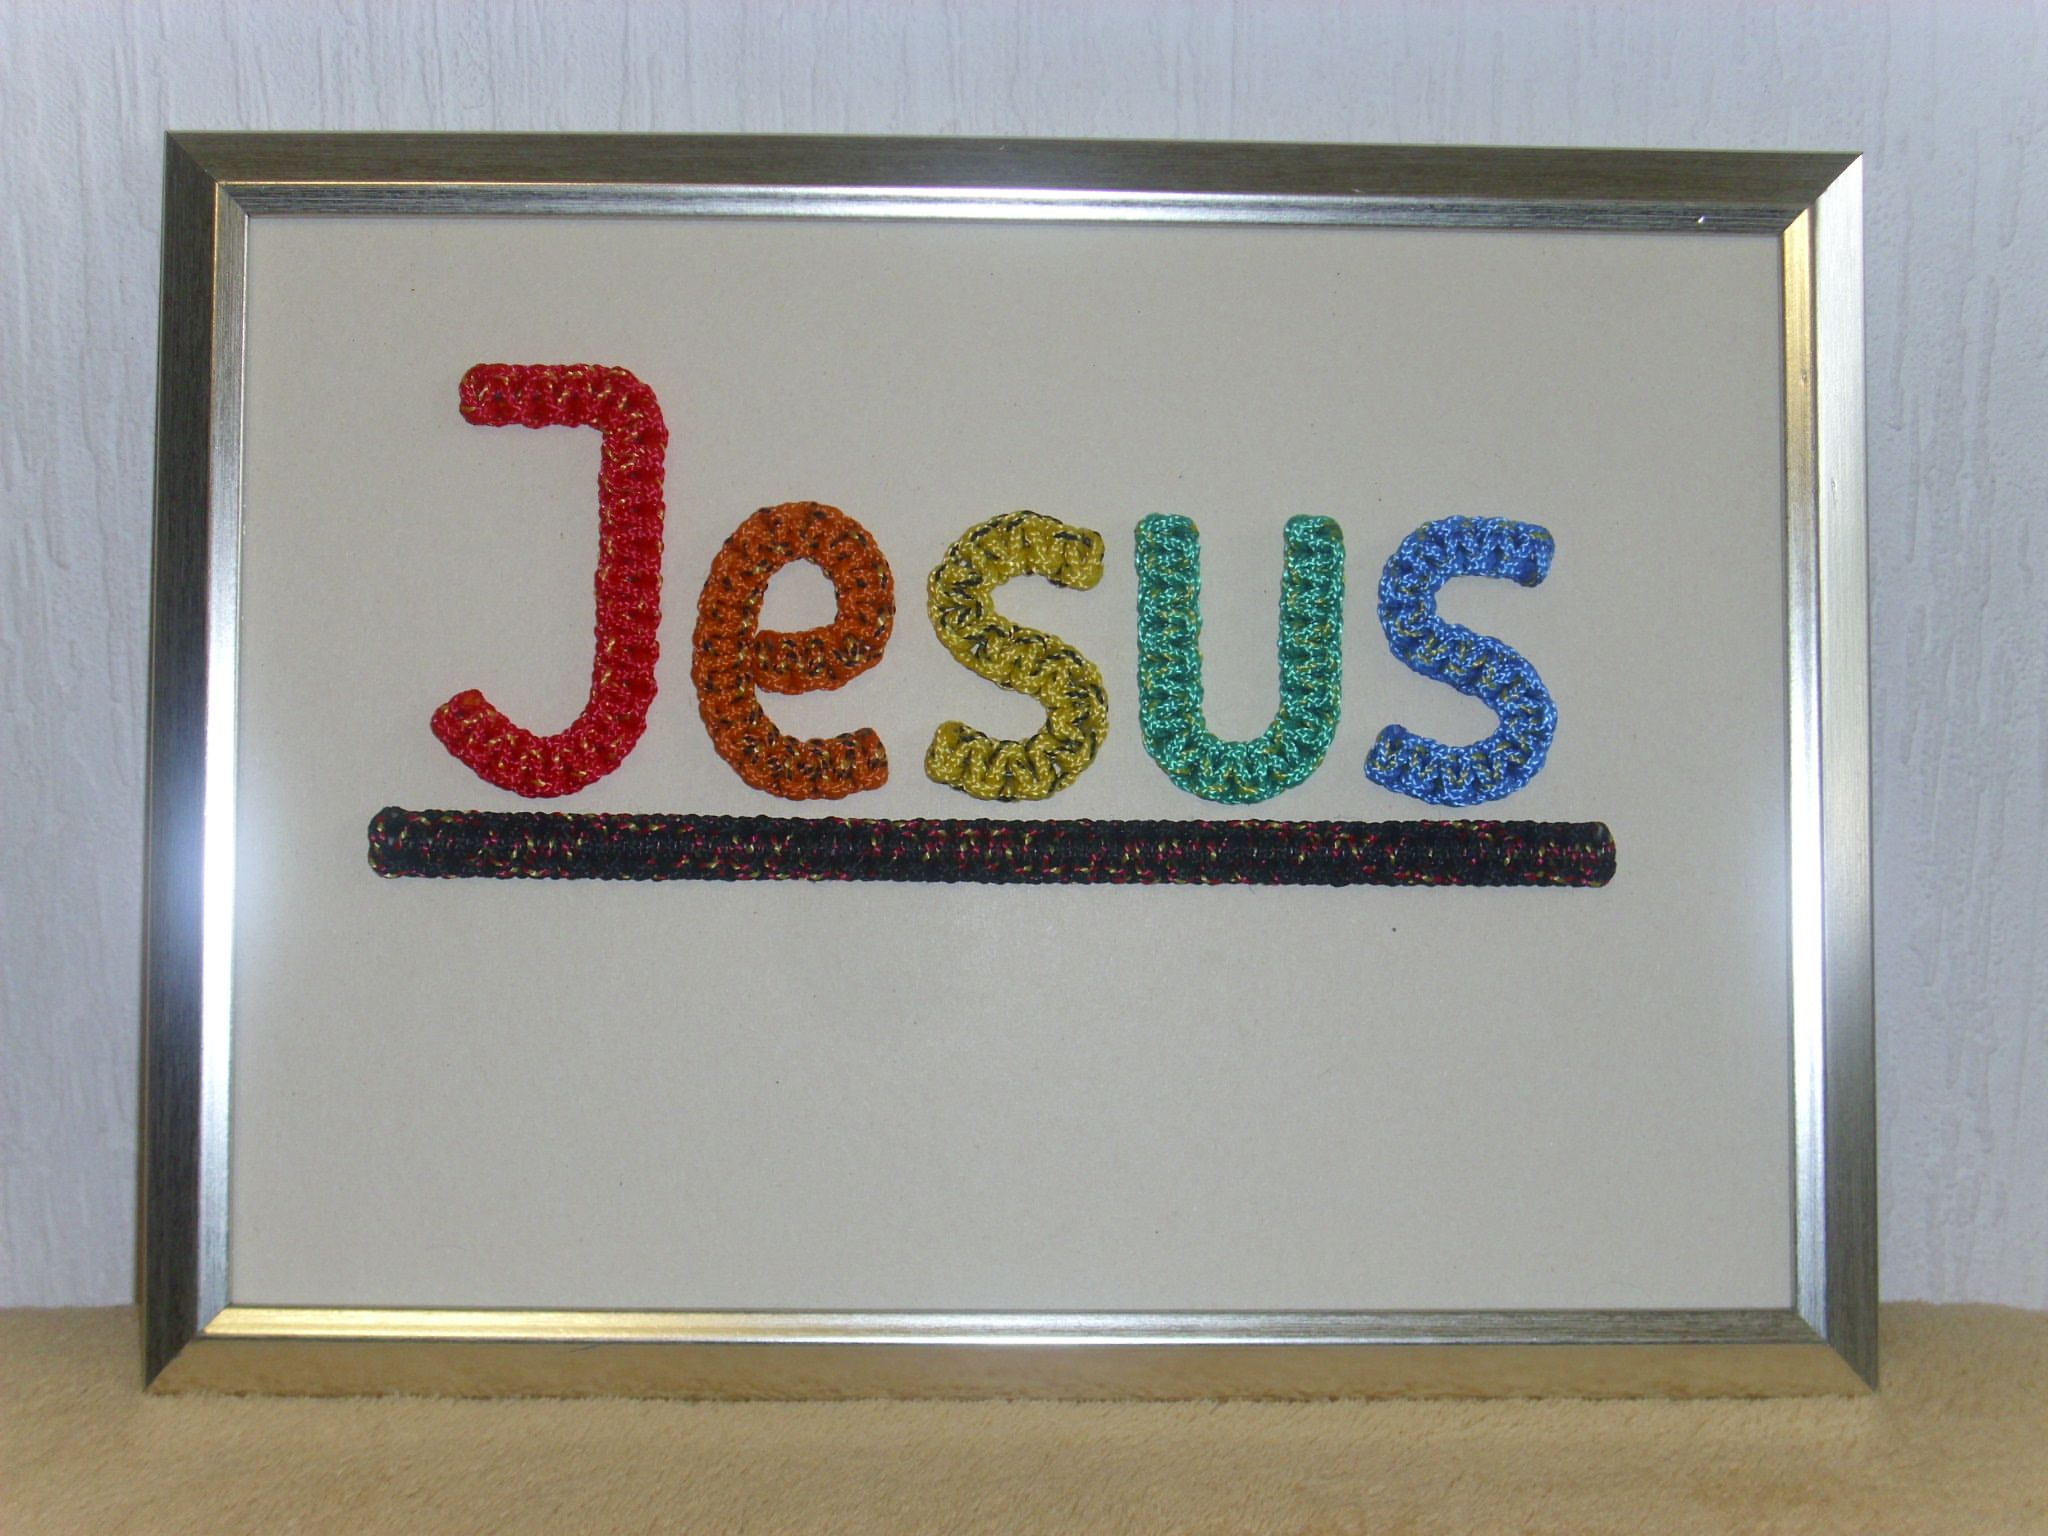 JESUS in Regenbogenfarben geknotet, mit Rahmen, ca. 24 x 32 cm, Best.Nr. 031, 35,- Euro